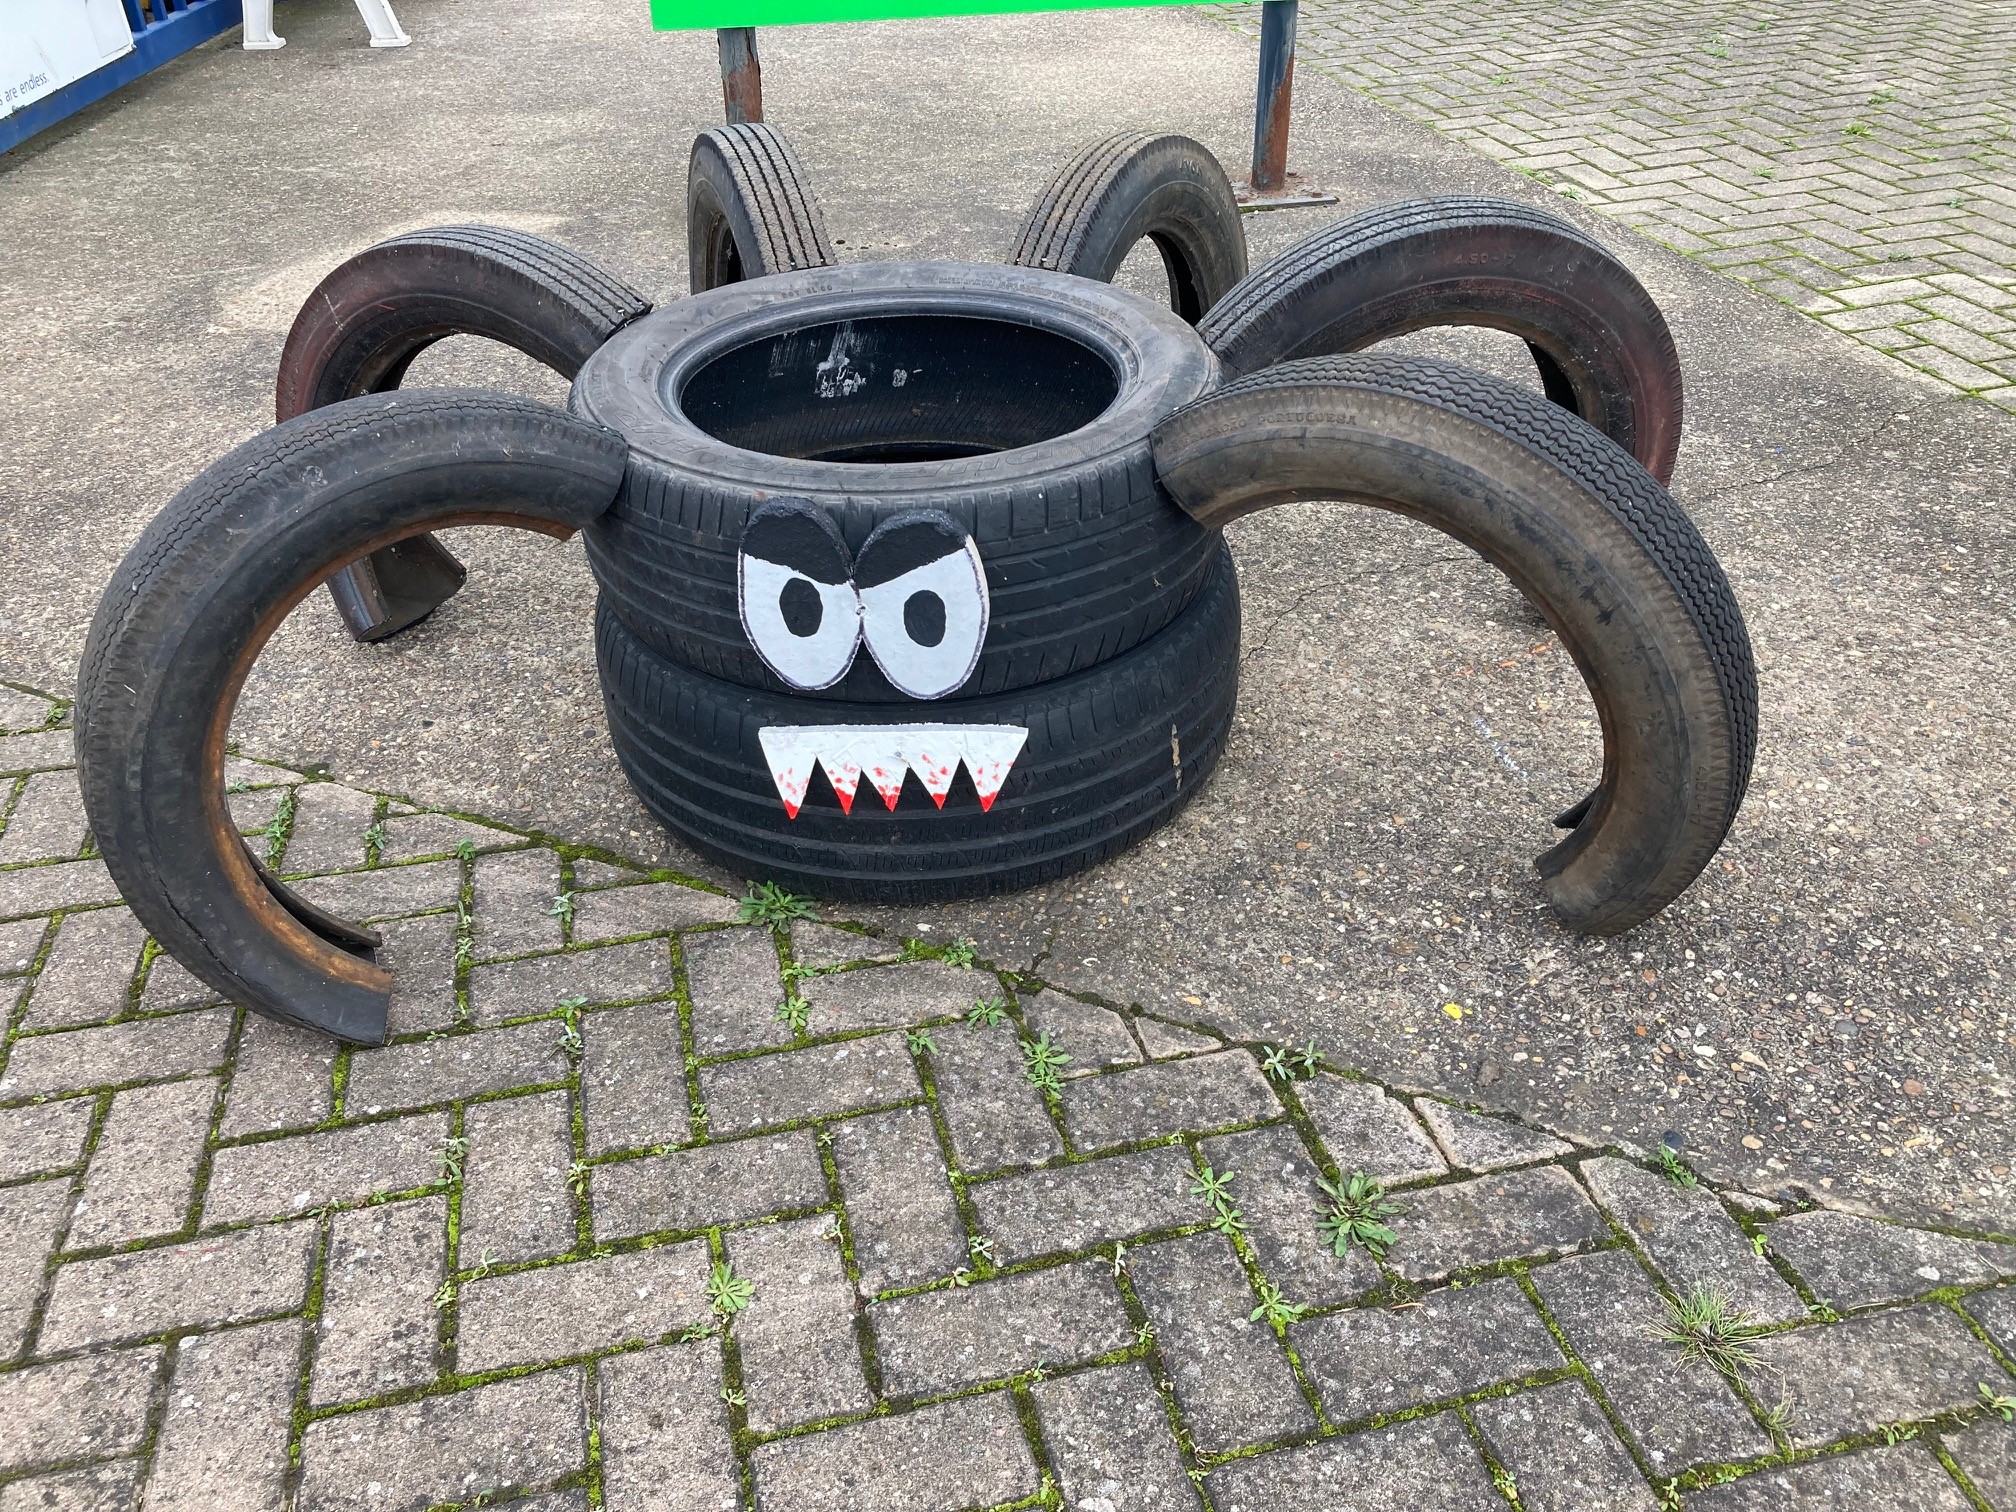 Tarantula made of tyres